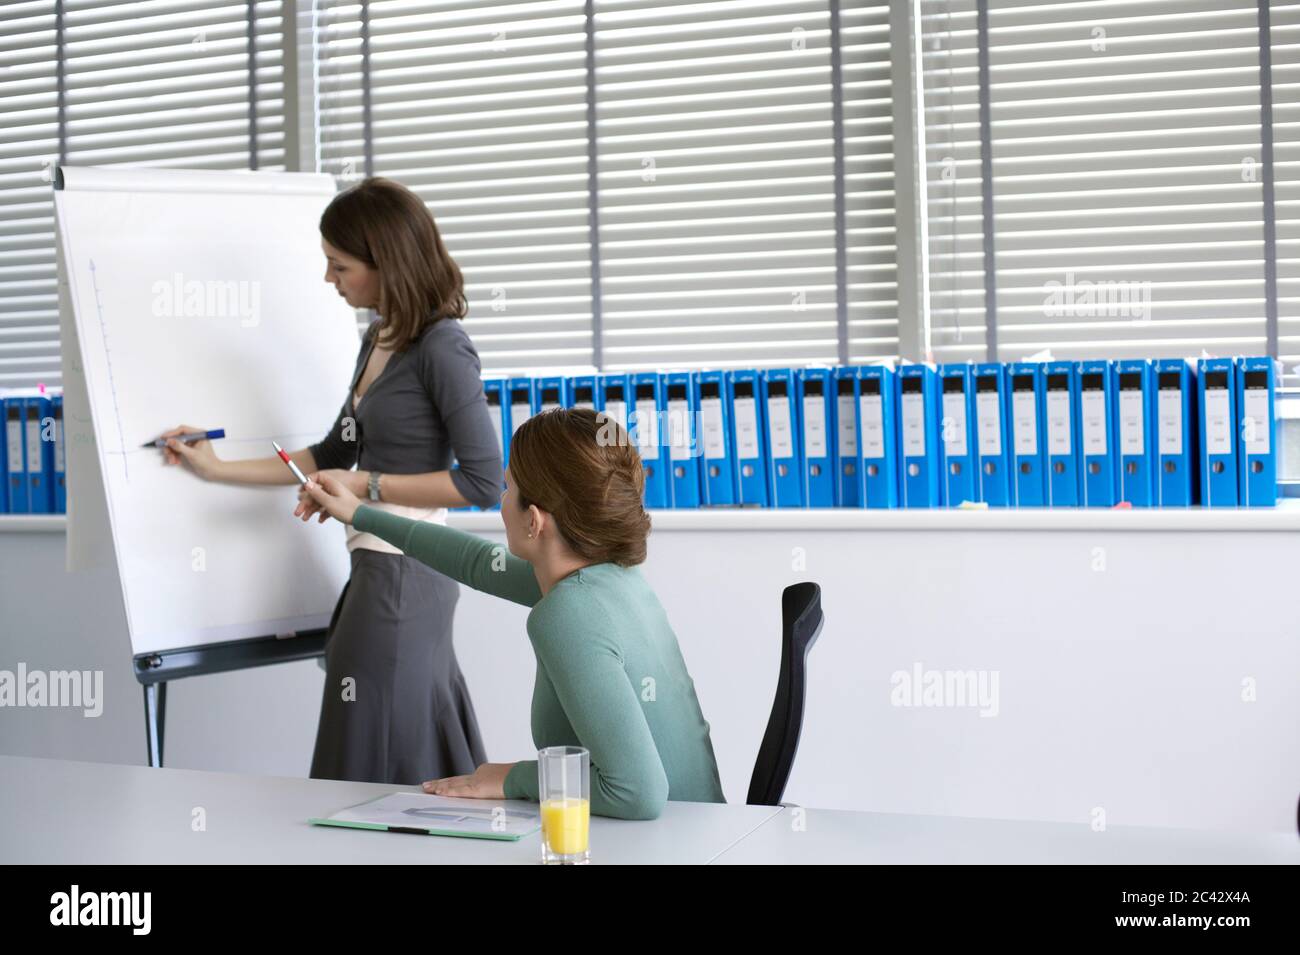 Junge Frau malt auf einem Flipchart - Büro-Ranking nach den Anweisungen ihres Chefs Stockfoto